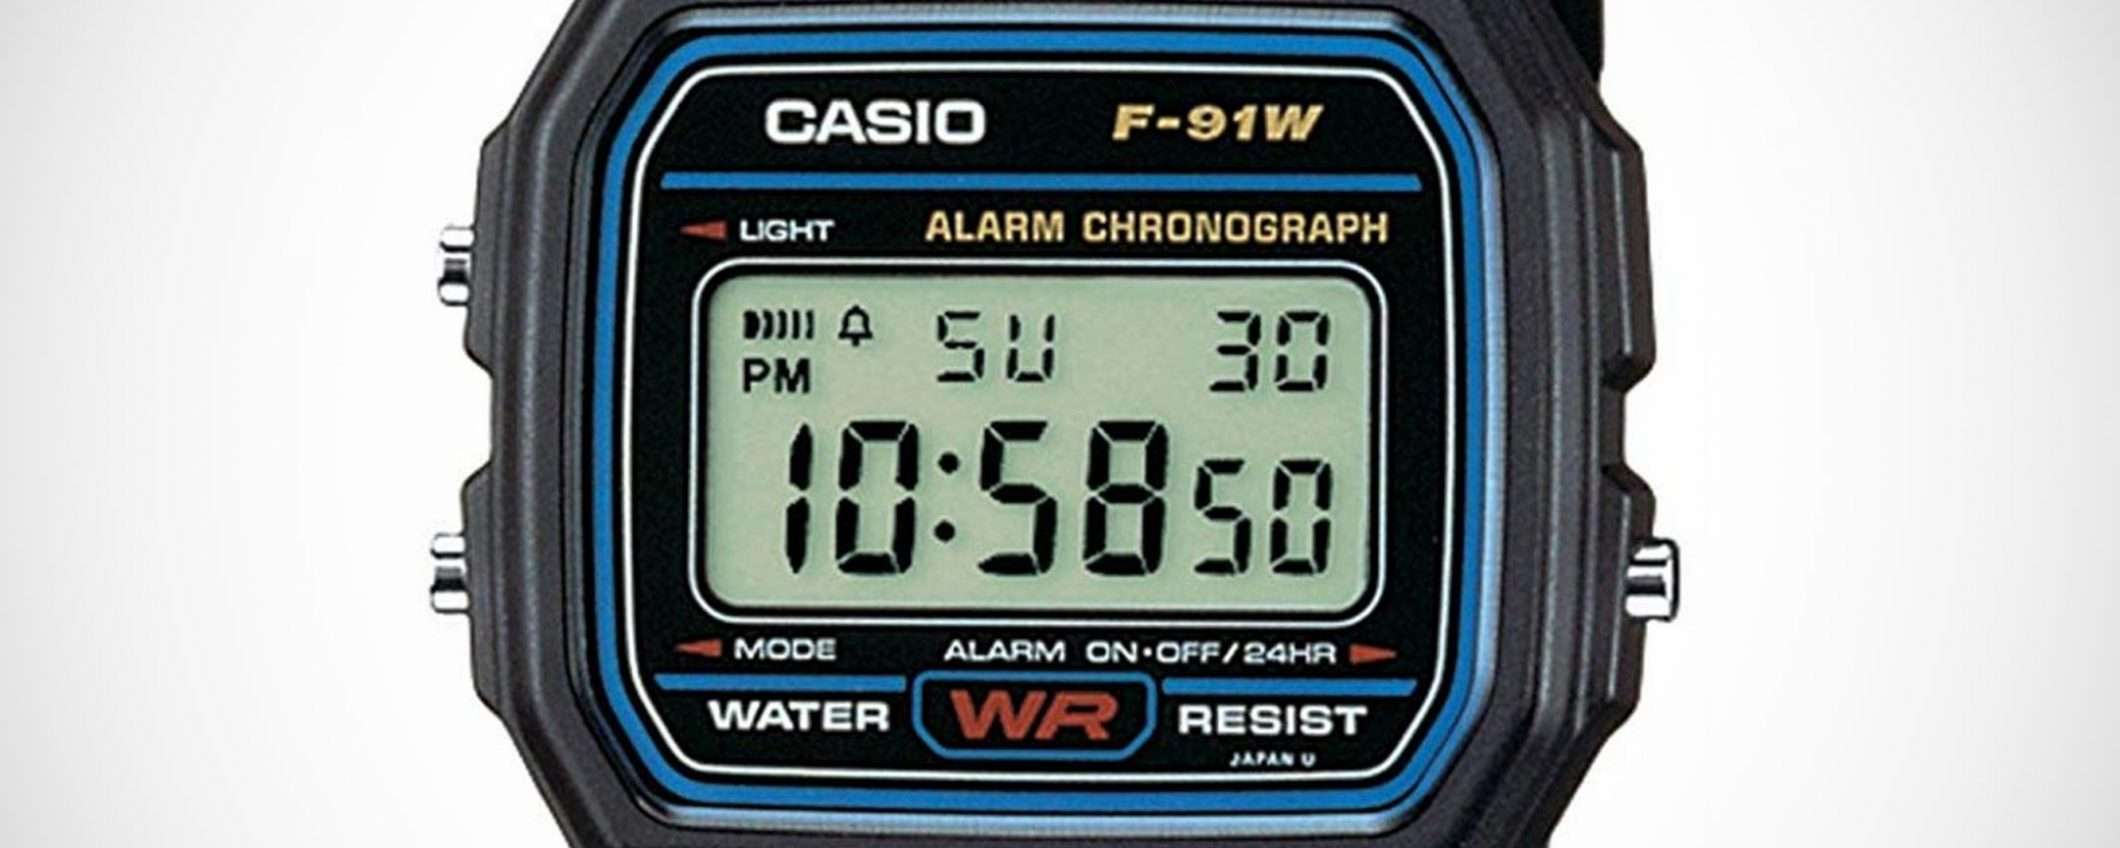 L'orologio CASIO F-91W a € 9,99, spedizione inclusa